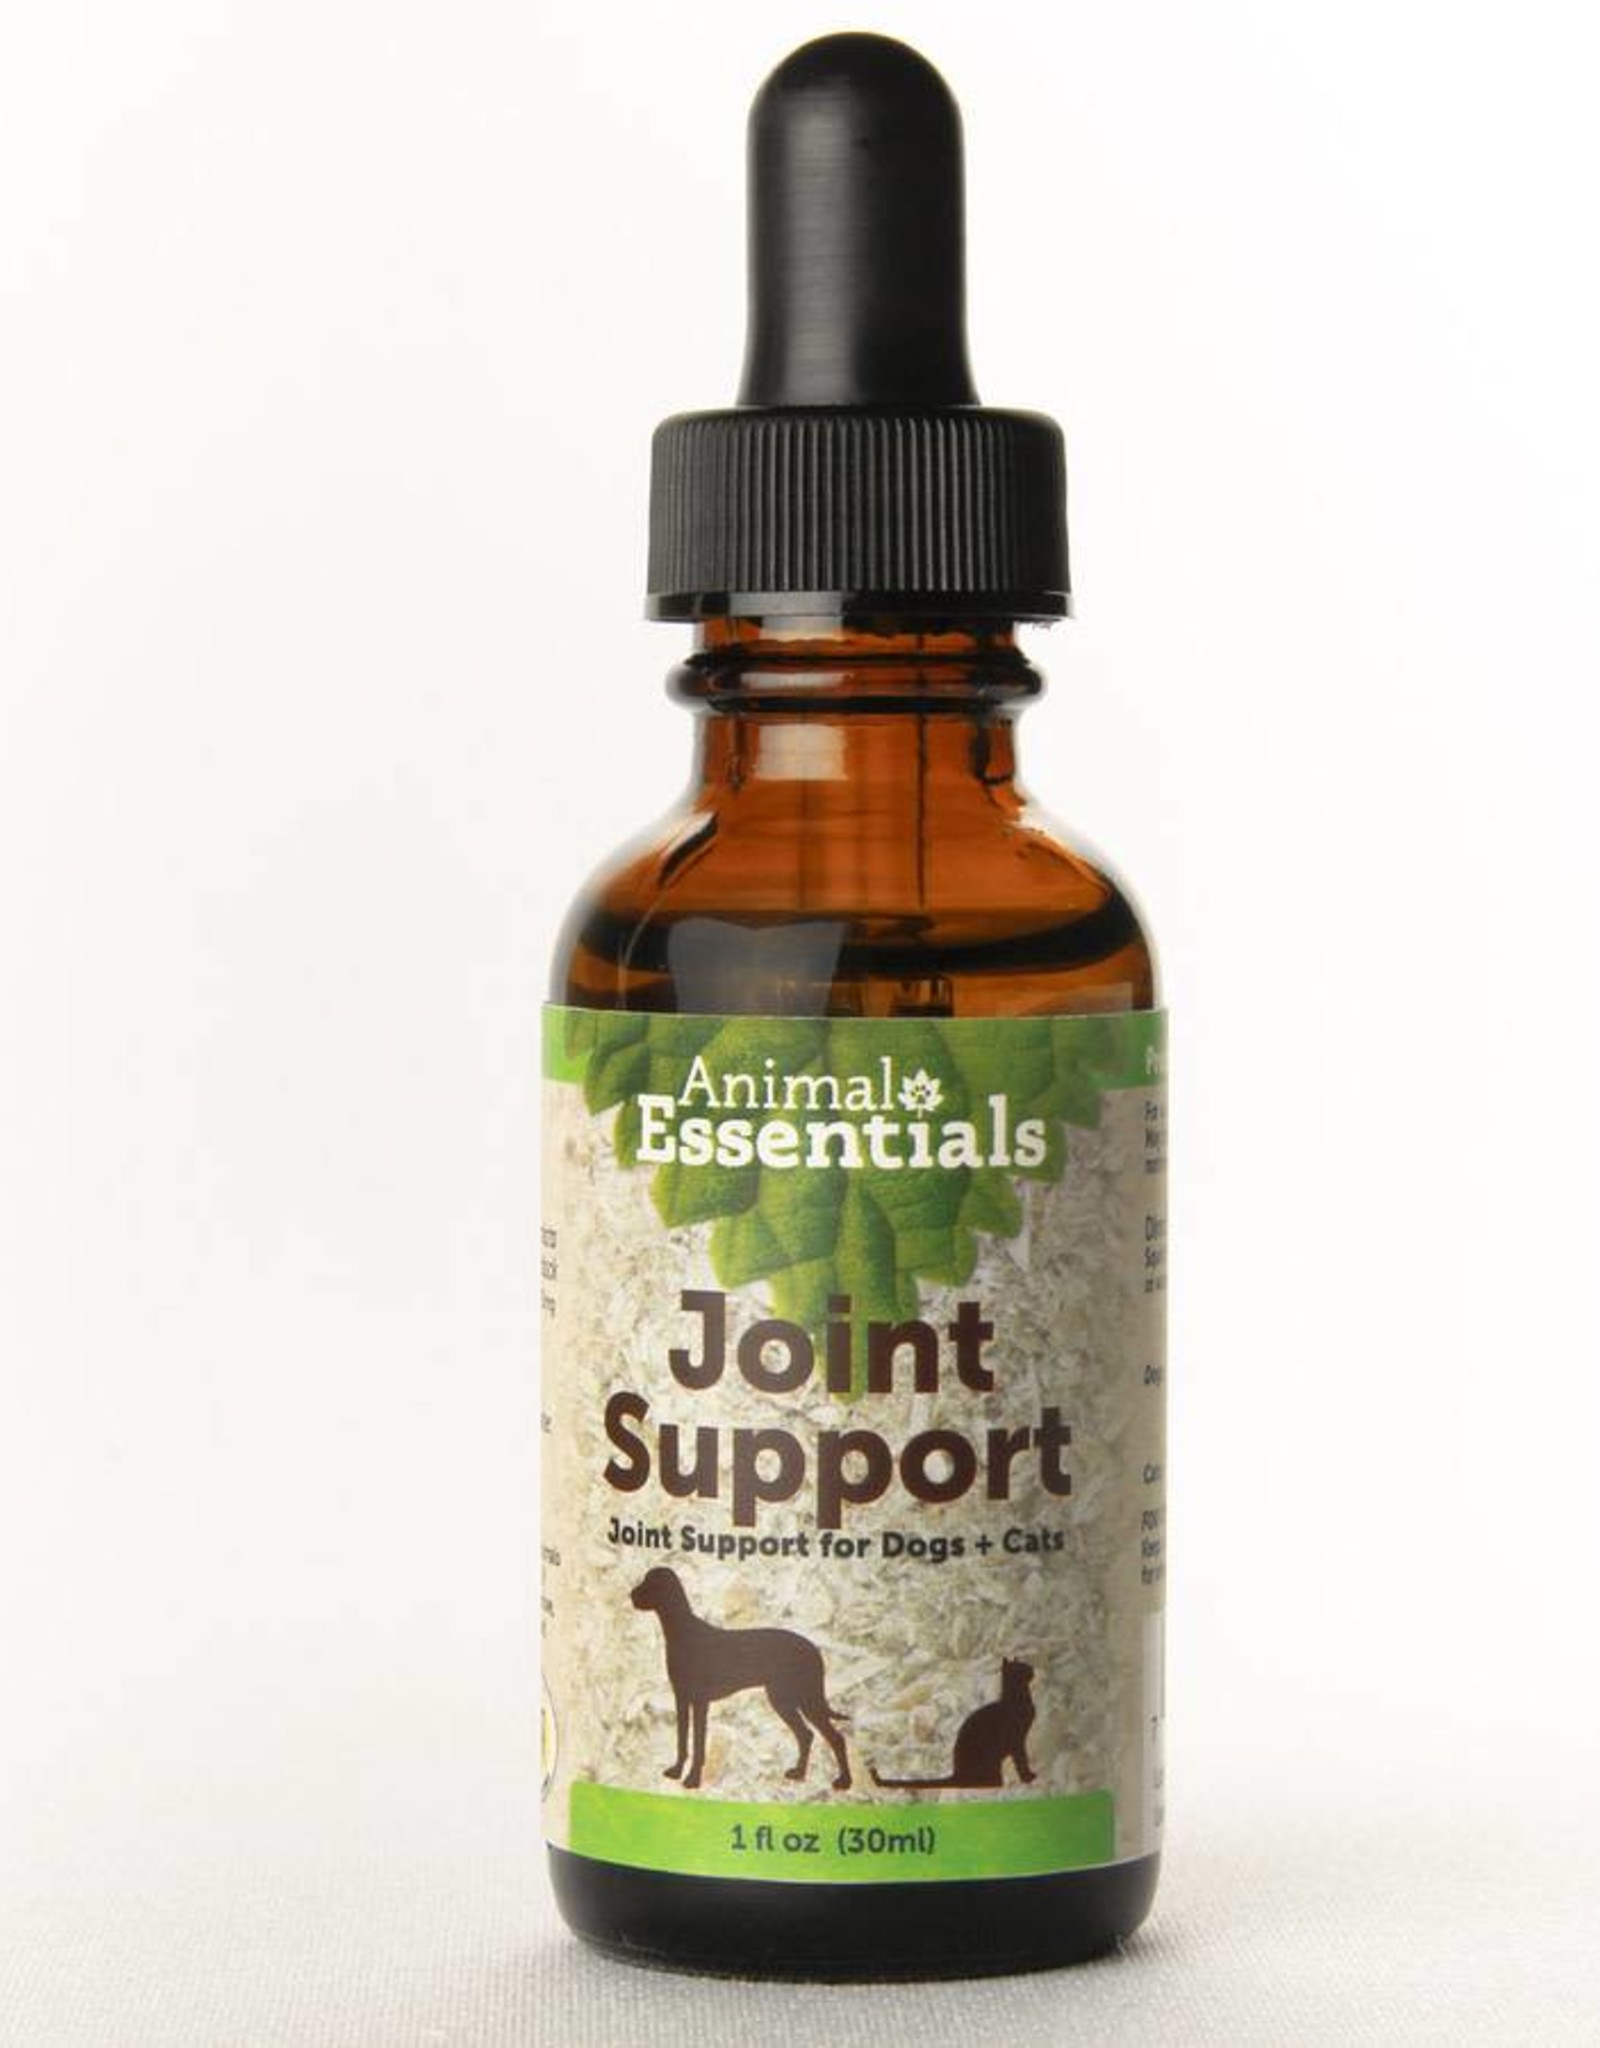 Animal Essentials Animal Essentials Joint Support 1oz